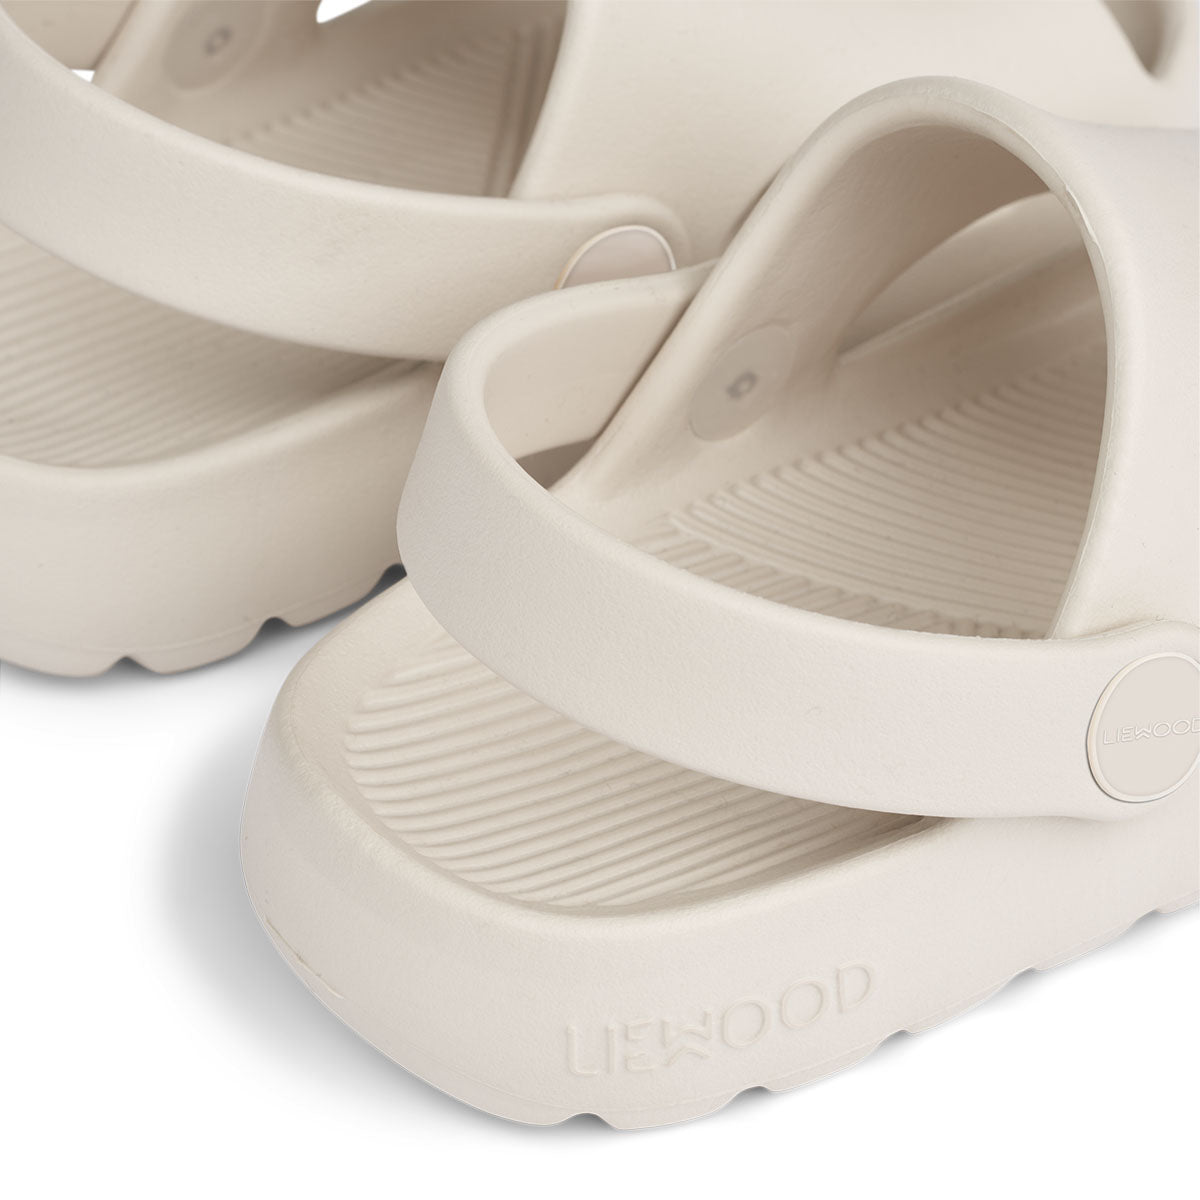 Ben je op zoek naar praktische én leuk uitziende sandalen? Dan zijn deze morris sandalen van Liewood in de kleur sandy ideaal! Deze sandalen zitten namelijk enorm comfortabel, dankzij het zachte en lichtgewicht materiaal, maar zien er ook stijlvol uit. VanZus